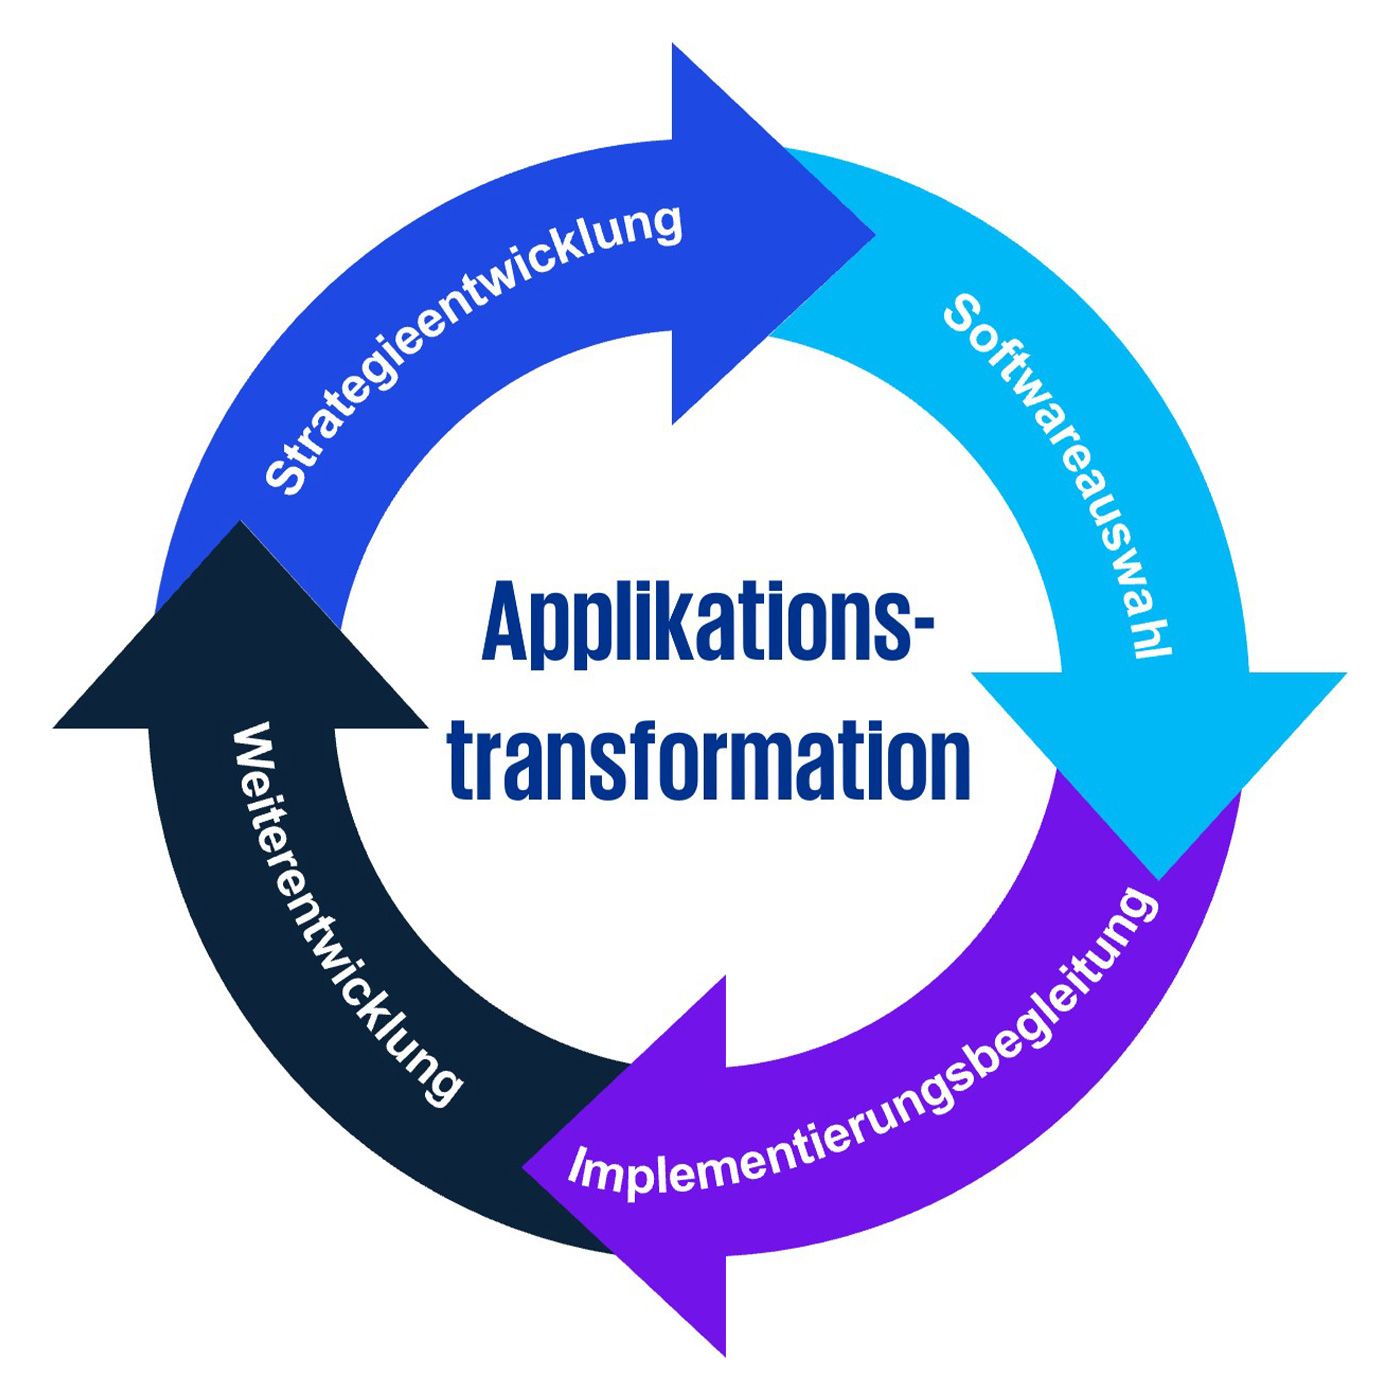 Applikationstransformation